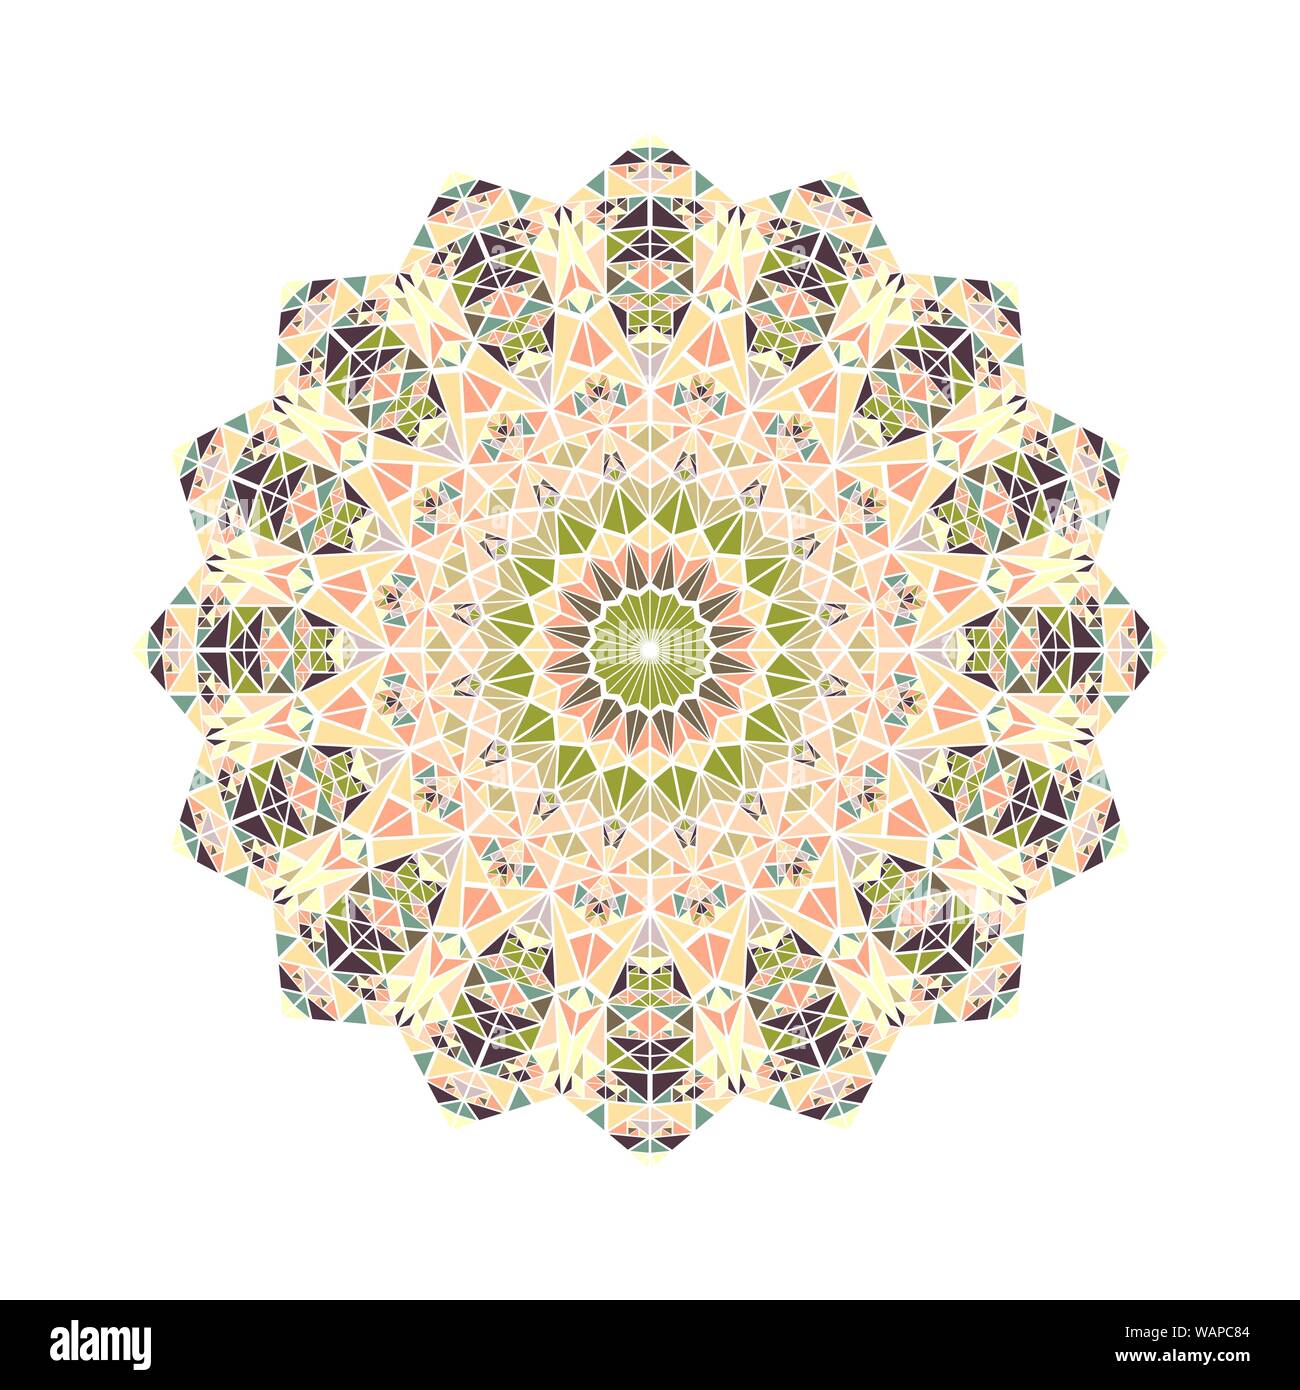 Reich verzierte abstrakte dreieckige ornament Mandala - runde polygonalen Rundschreiben Zierpflanzen vektor Element aus Dreiecken Stock Vektor